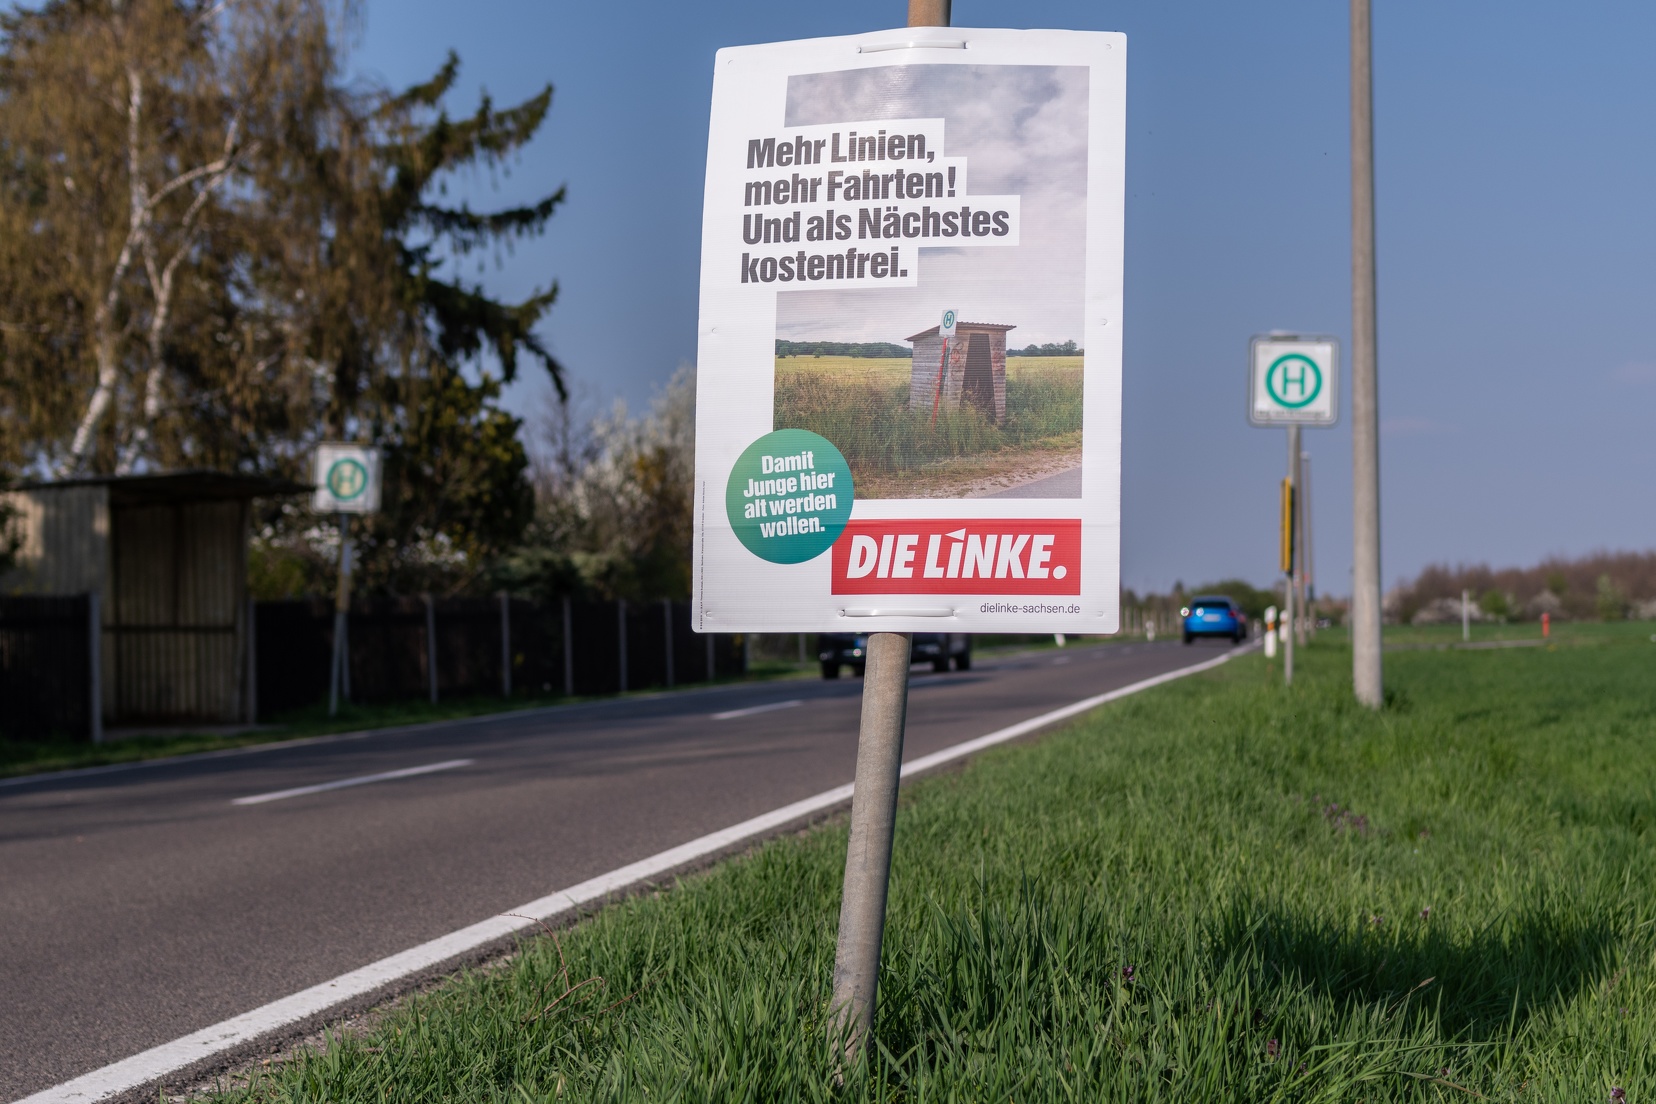 Zu sehen ist ein Wahlplakat mit dem Text: "Mehr Linien, mehr Fahrten! Und als nächstes:Kostenfrei." Das Plakat hängt an einer Landstraße, im Hintergrund ist eine verlassene Bushaltestelle zu sehen.